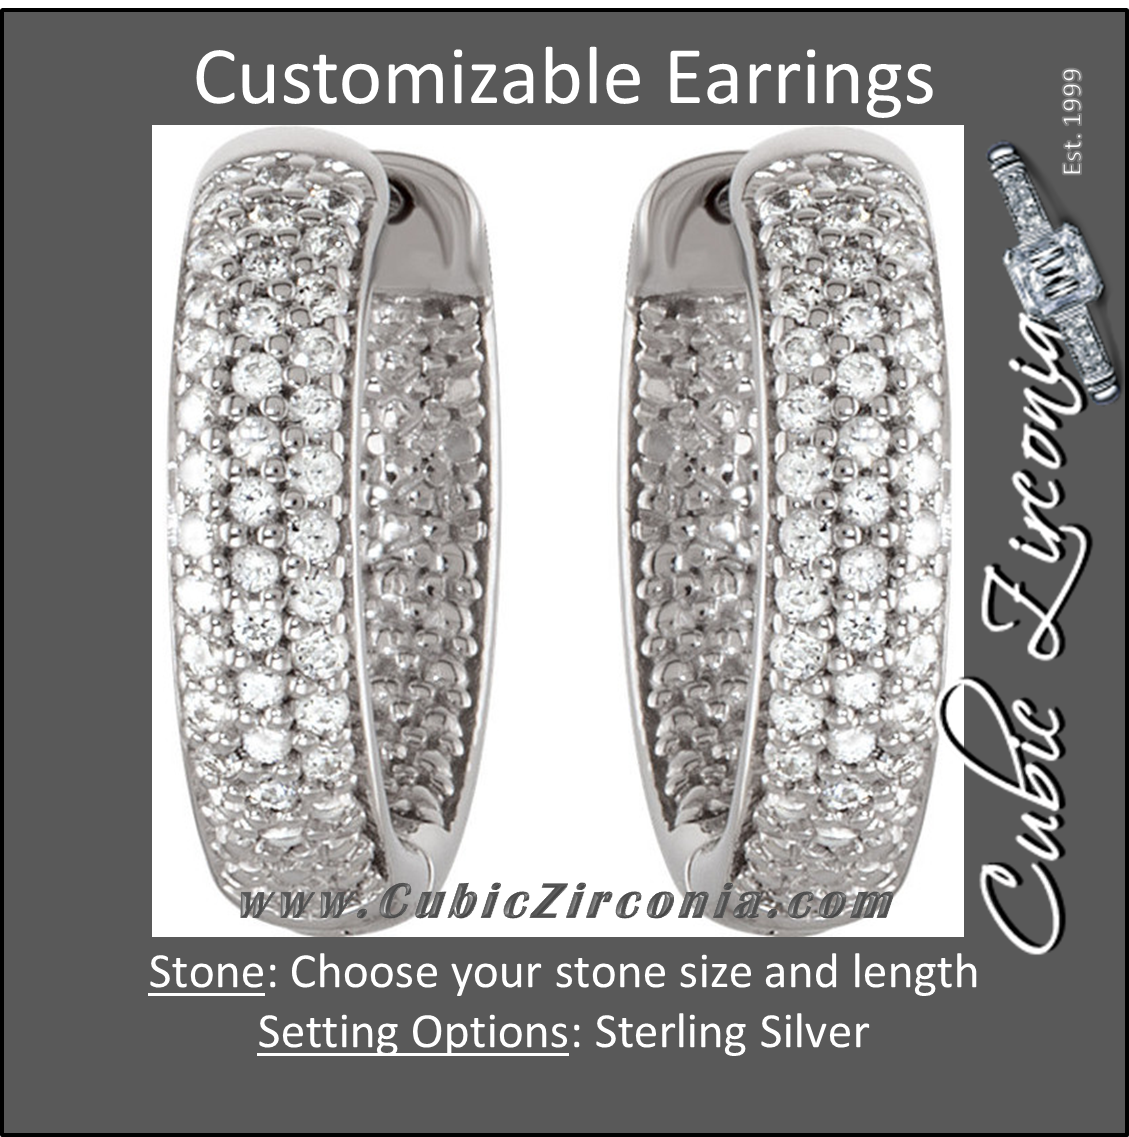 Cubic Zirconia Earrings- Customizable Sterling Silver Three Row CZ Inside/Outside Hoop Earring Set